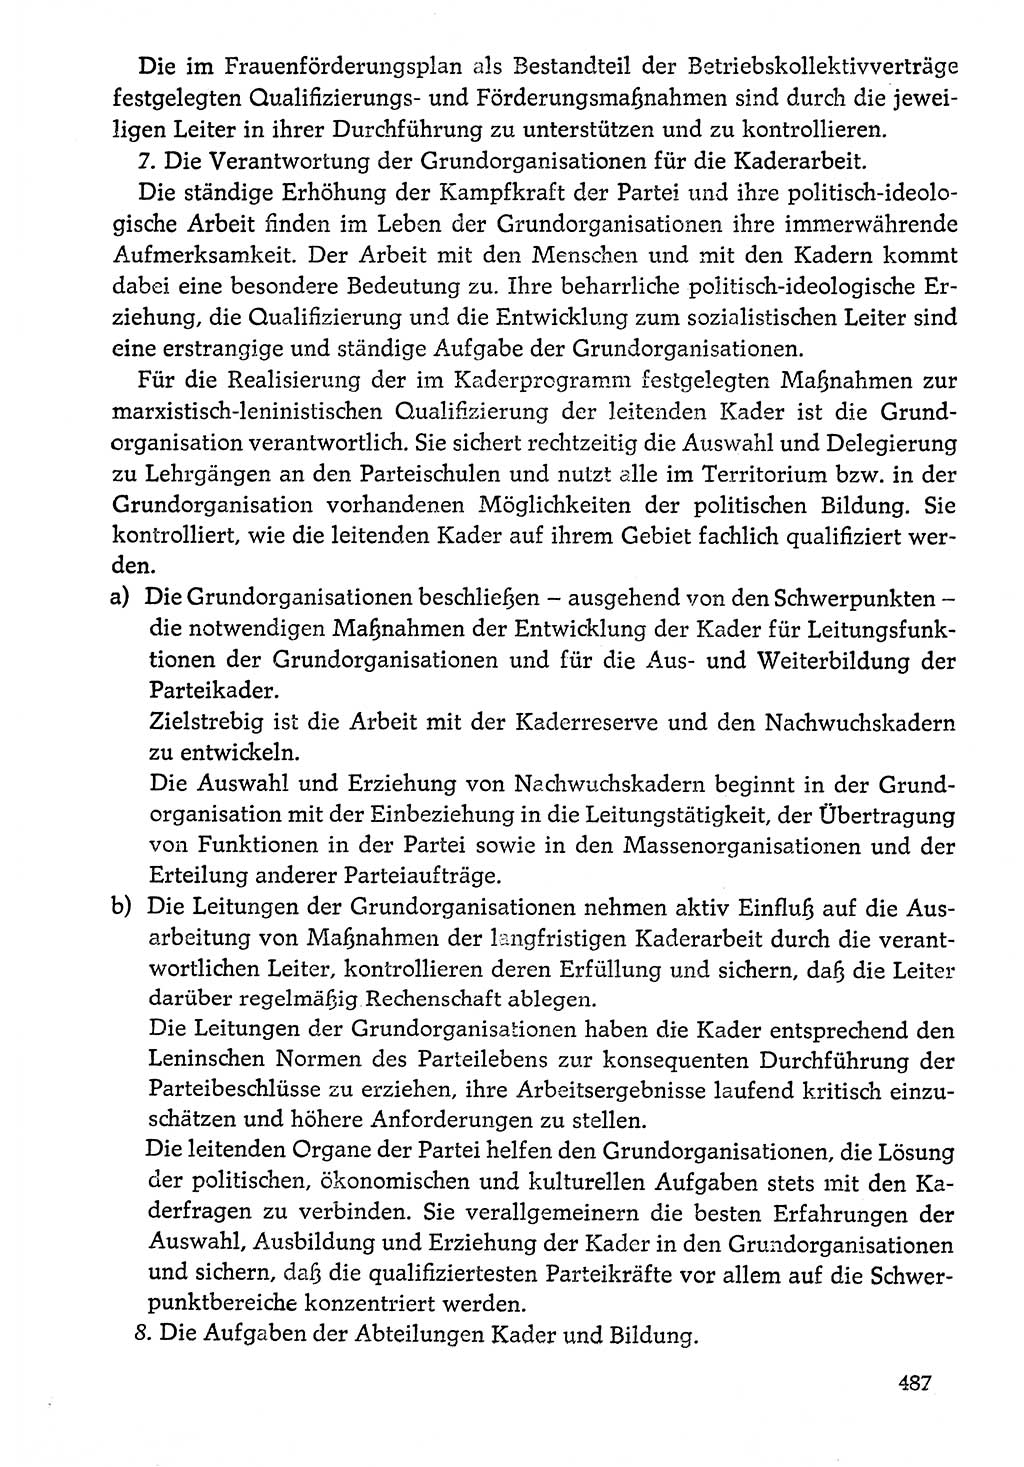 Dokumente der Sozialistischen Einheitspartei Deutschlands (SED) [Deutsche Demokratische Republik (DDR)] 1976-1977, Seite 487 (Dok. SED DDR 1976-1977, S. 487)